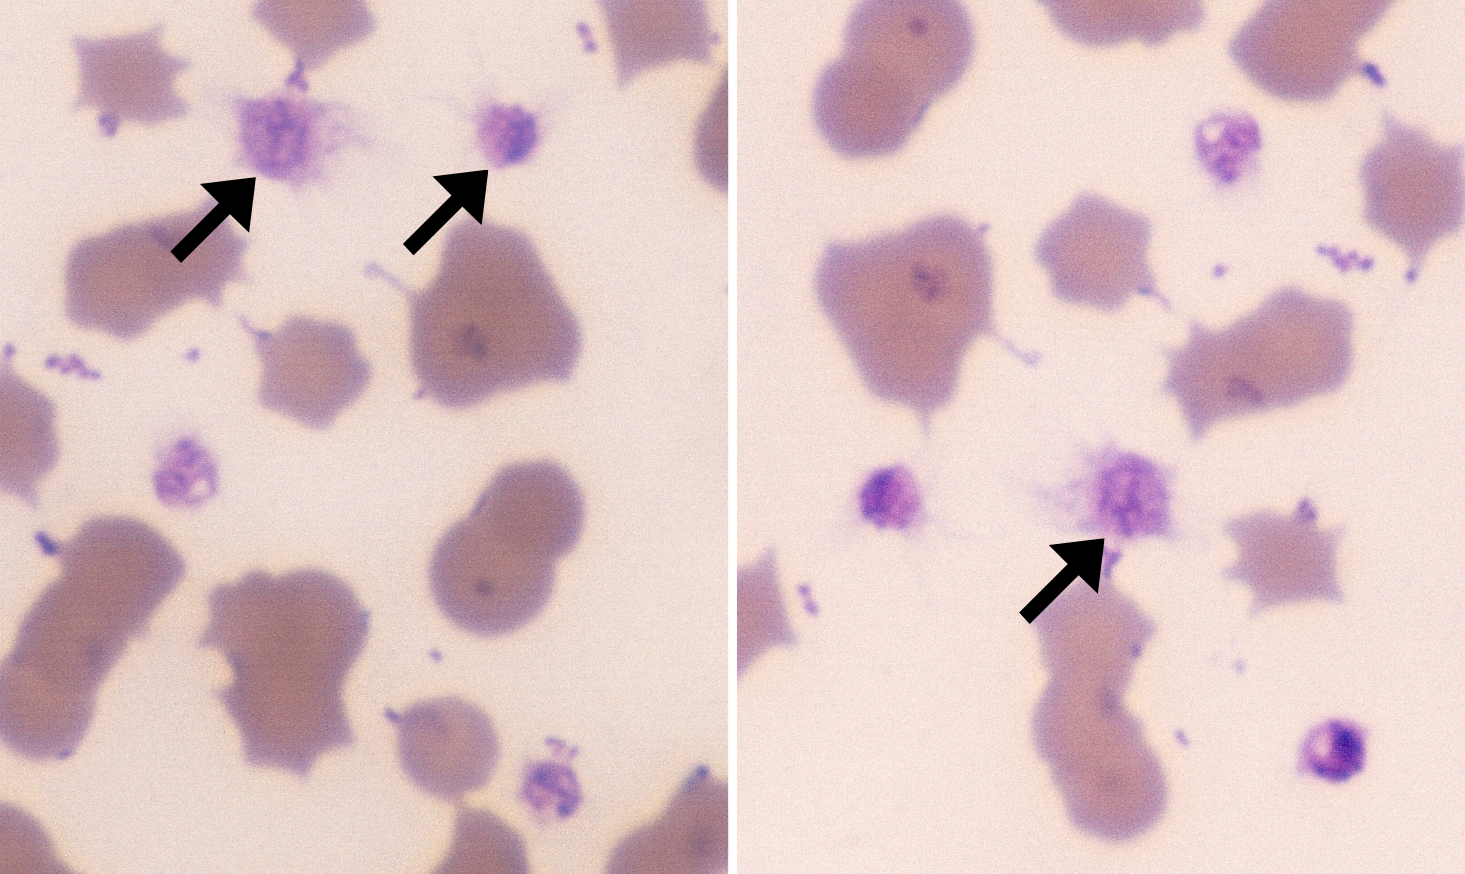 Activated Platelets 2-3 (Feline 2-3 - Hemobartonella) ARROWS